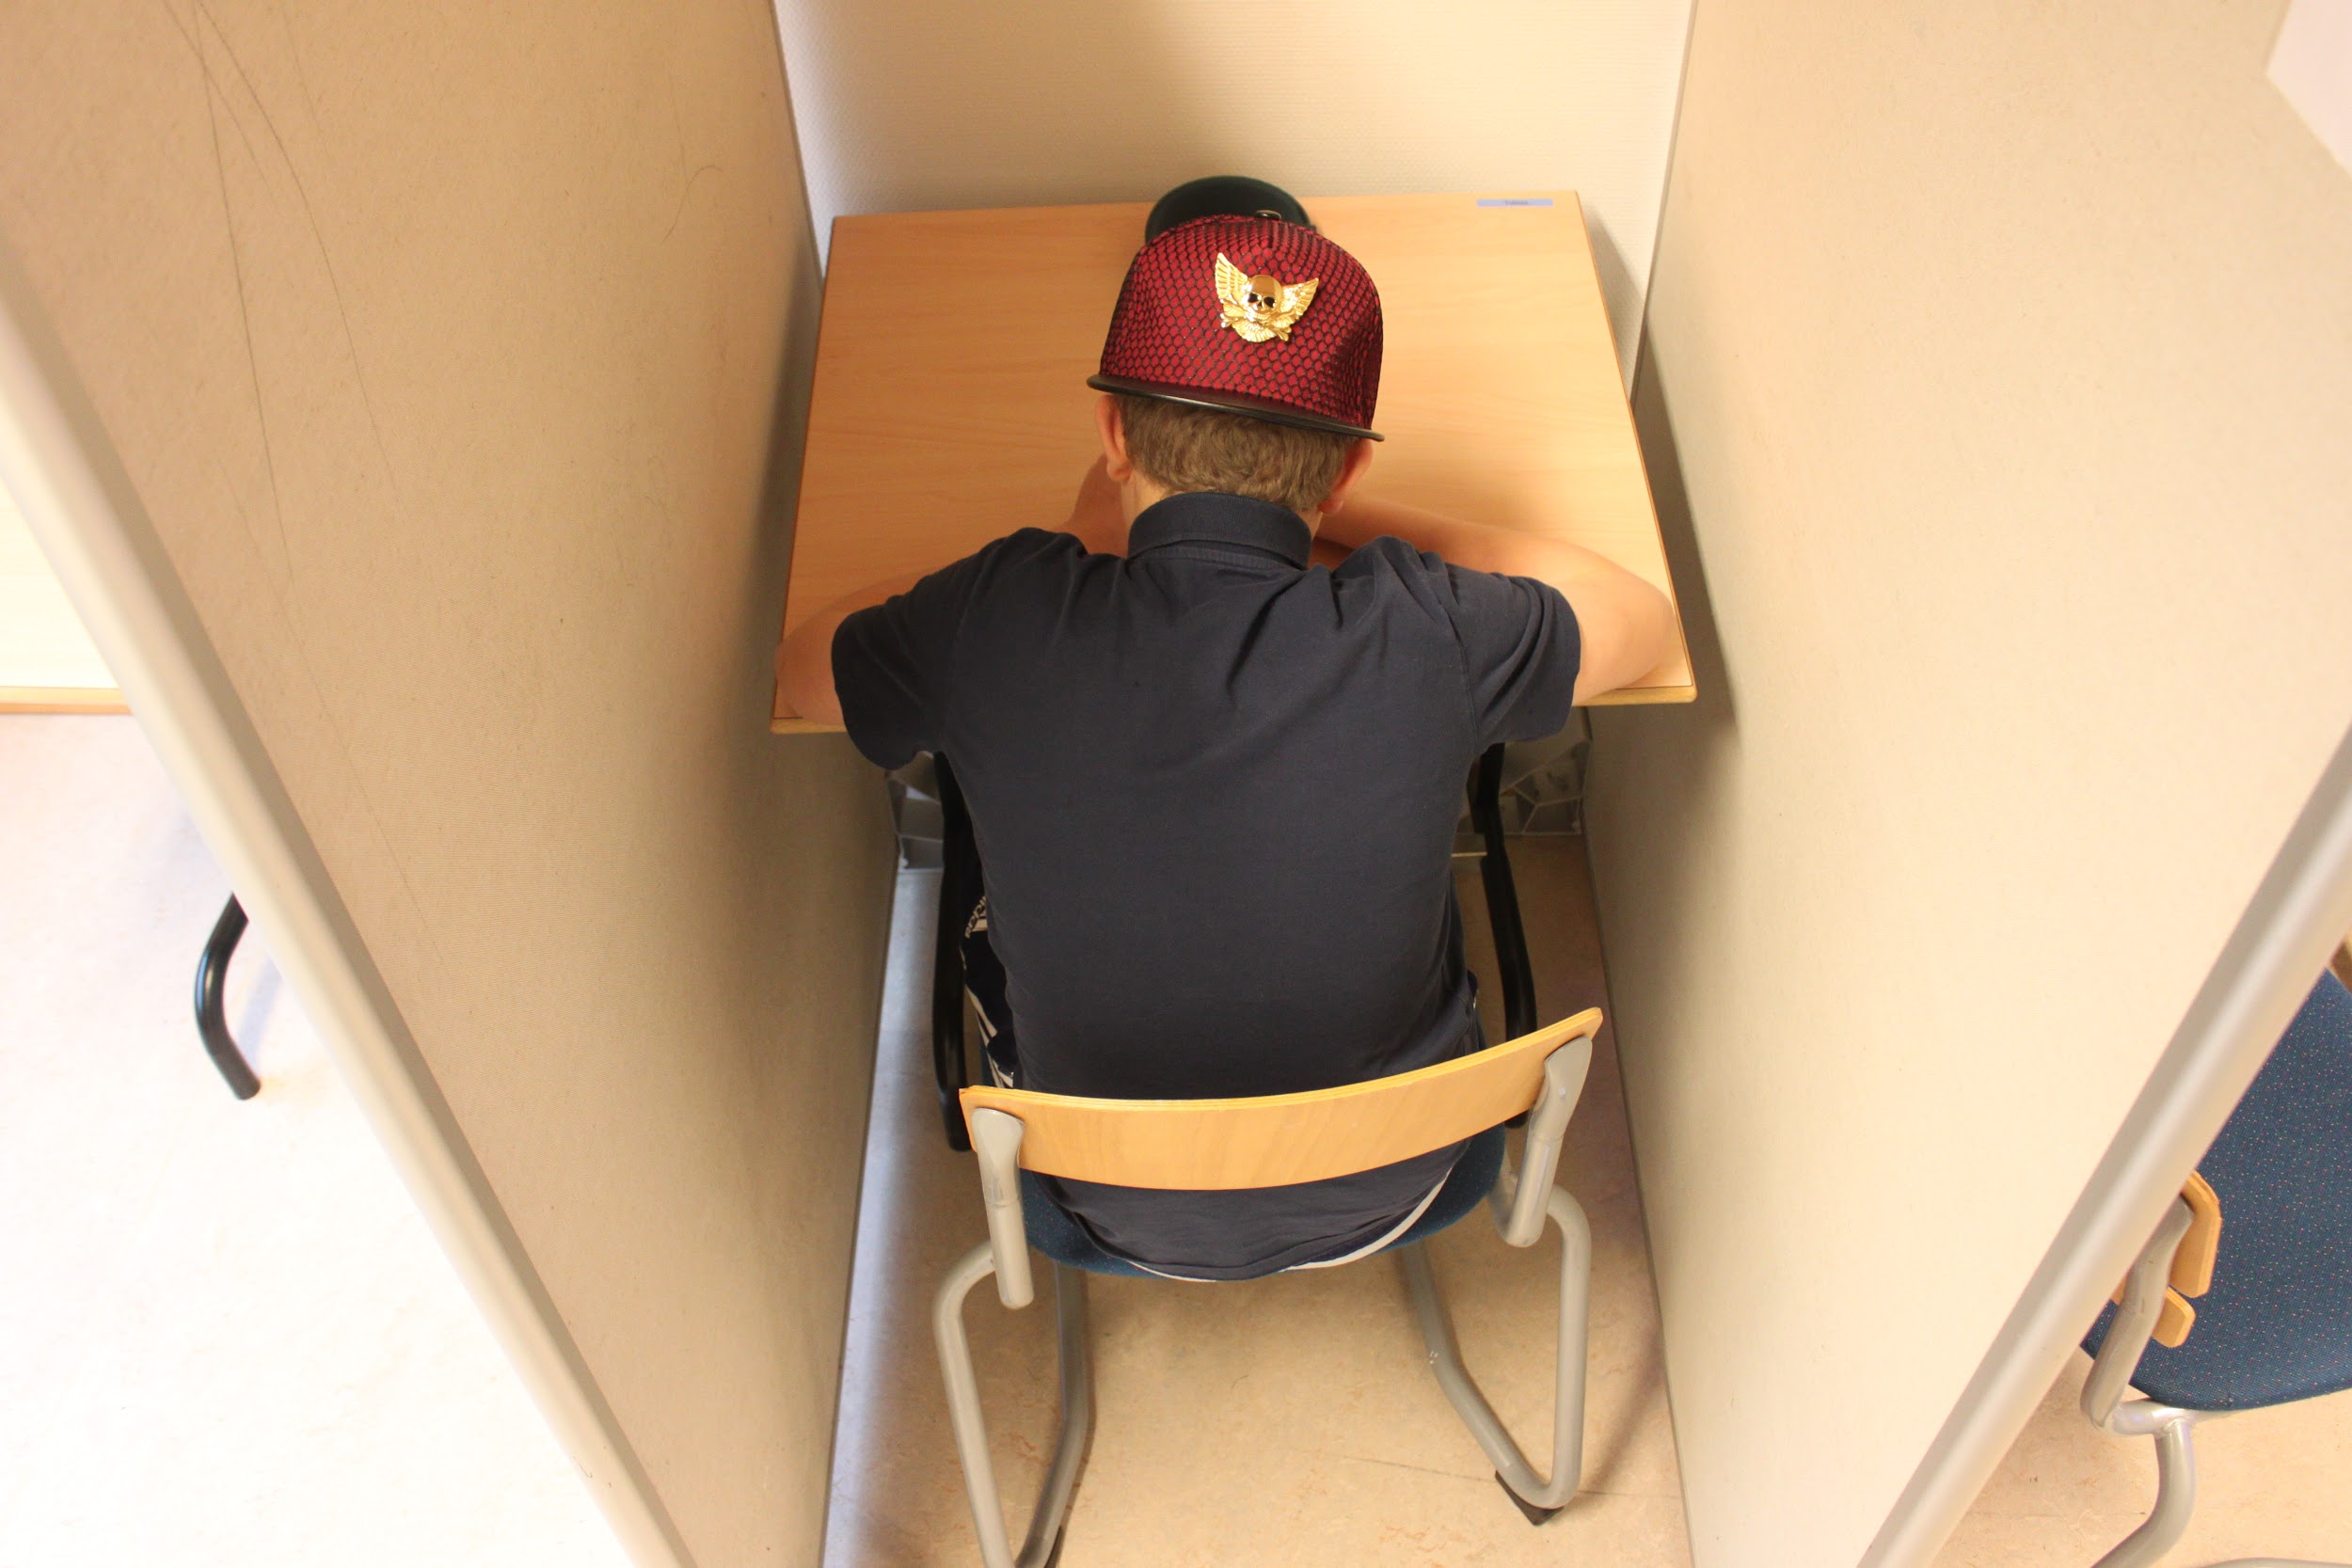 I et af undervisningslokalerne er der skærmede siddepladser, så eleverne kan sidde uforstyrret og arbejde